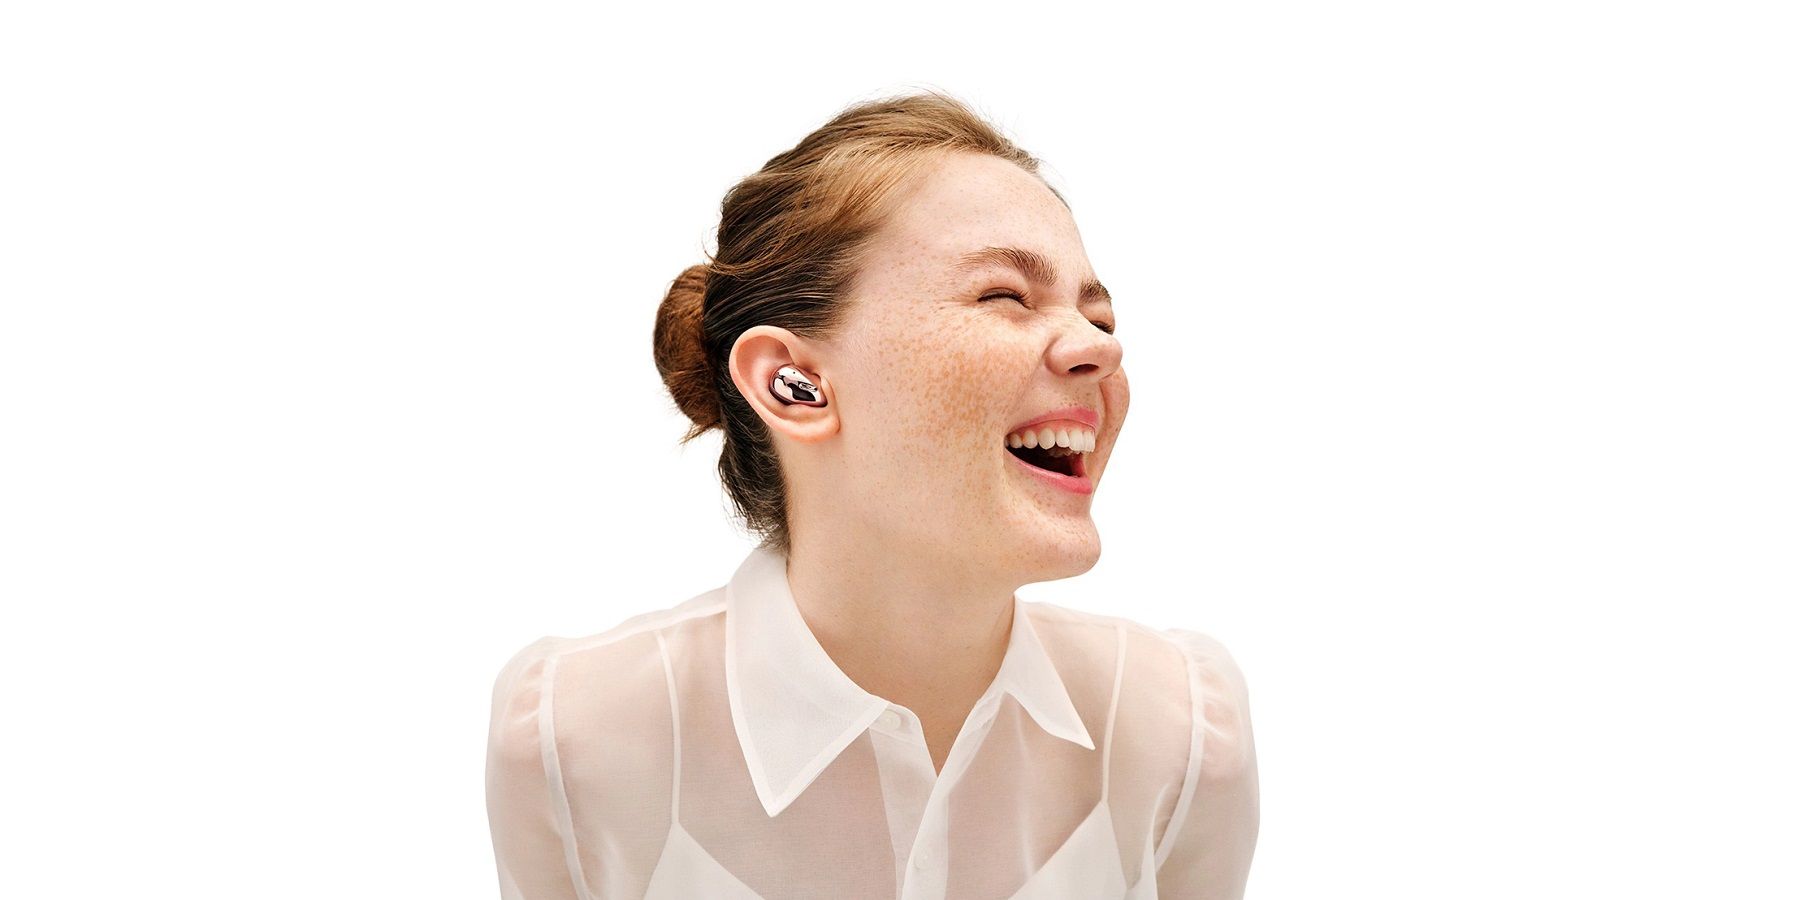 Samsung earbuds